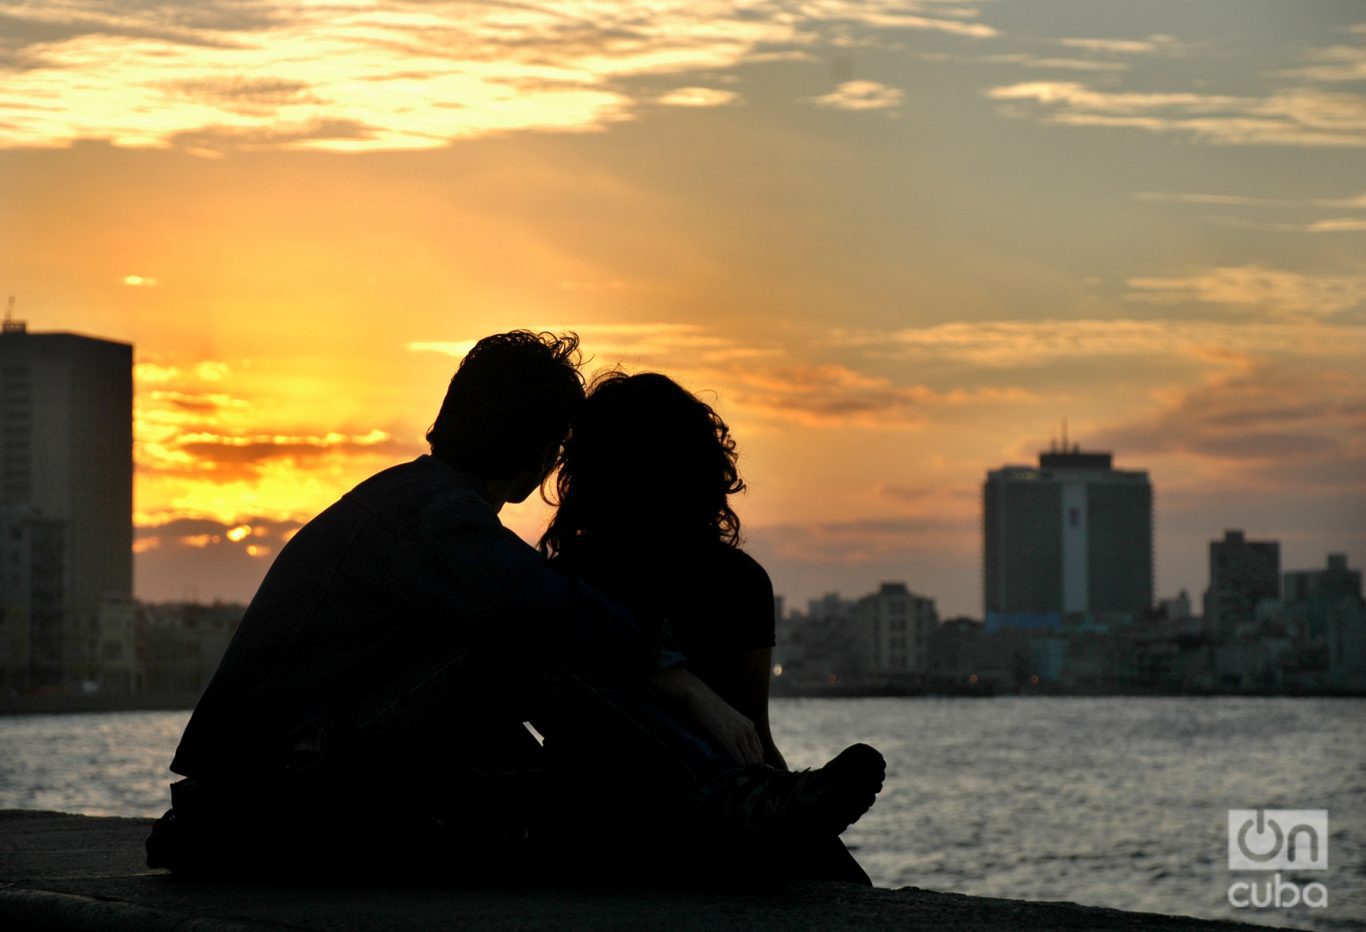 No hay mejor regalo para los enamorados que un atardecer en el Malecón de La Habana. Foto: Kaloian.